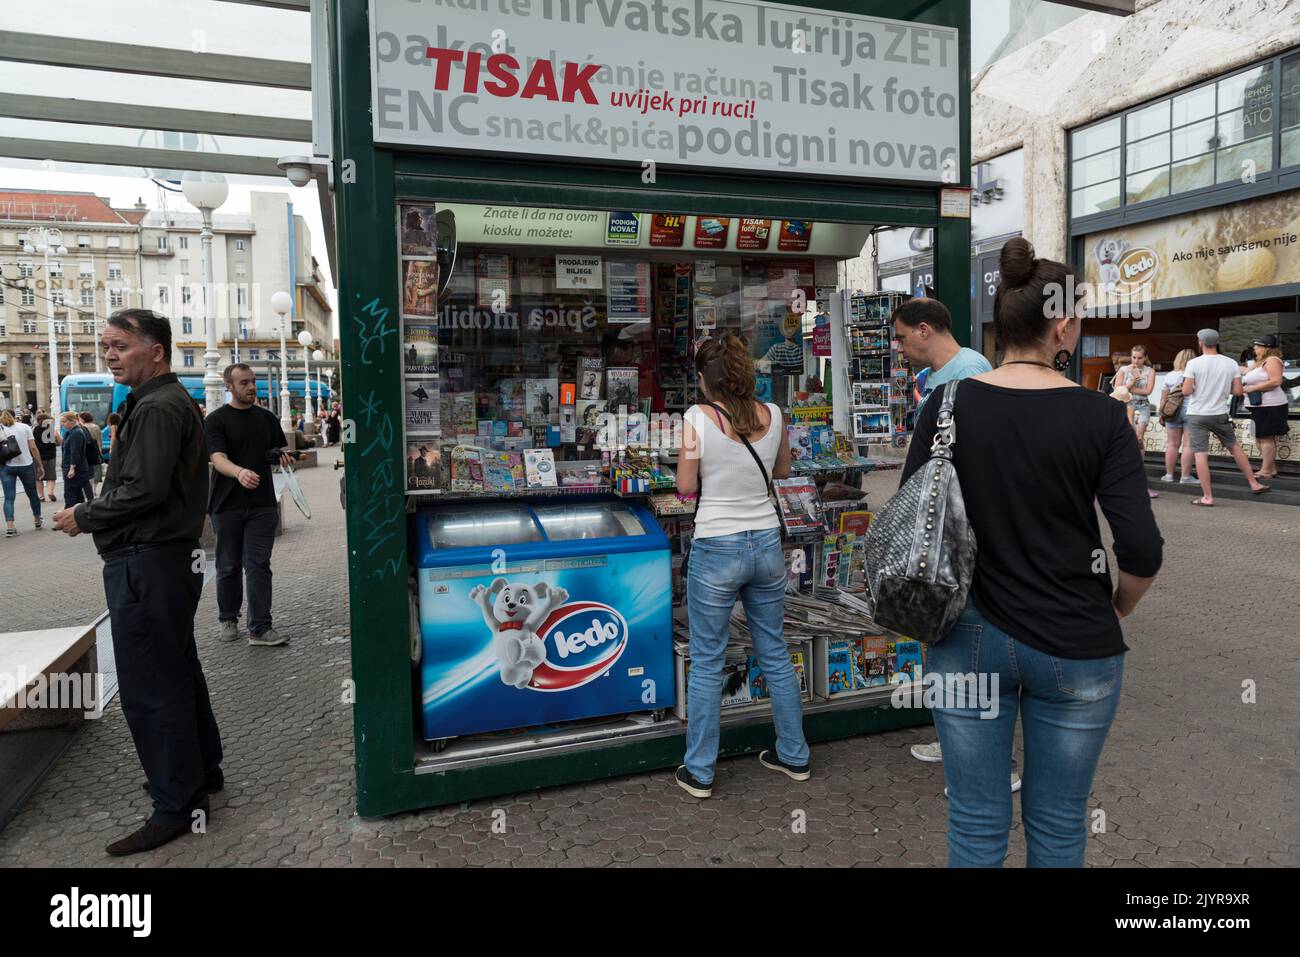 Un kiosque Tisak vend des articles comme des lunettes de soleil, des parapluies, des cigarettes, des briquets, des magazines, des piles et bien plus encore. Zagreb, Croatie, Europe Banque D'Images